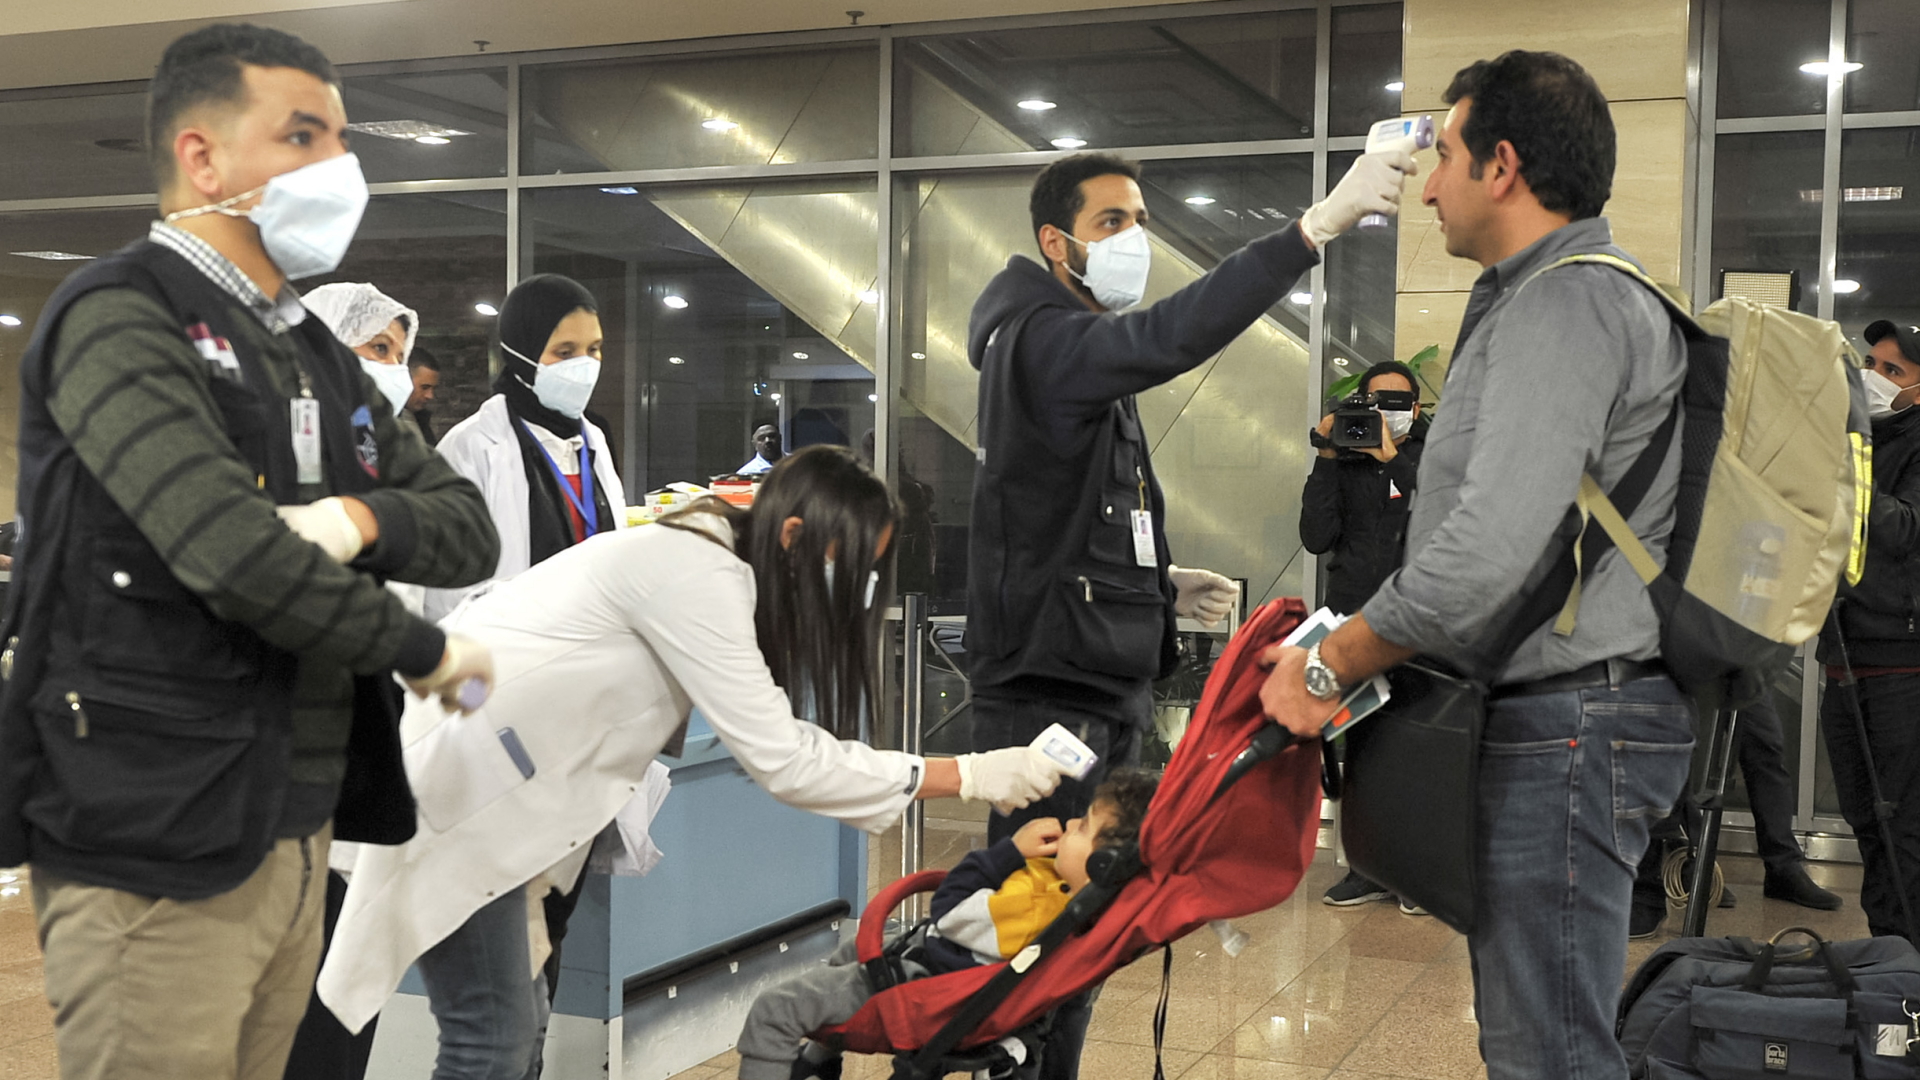 Passagiere werden auf dem Flughafen Kairo untersucht | AFP